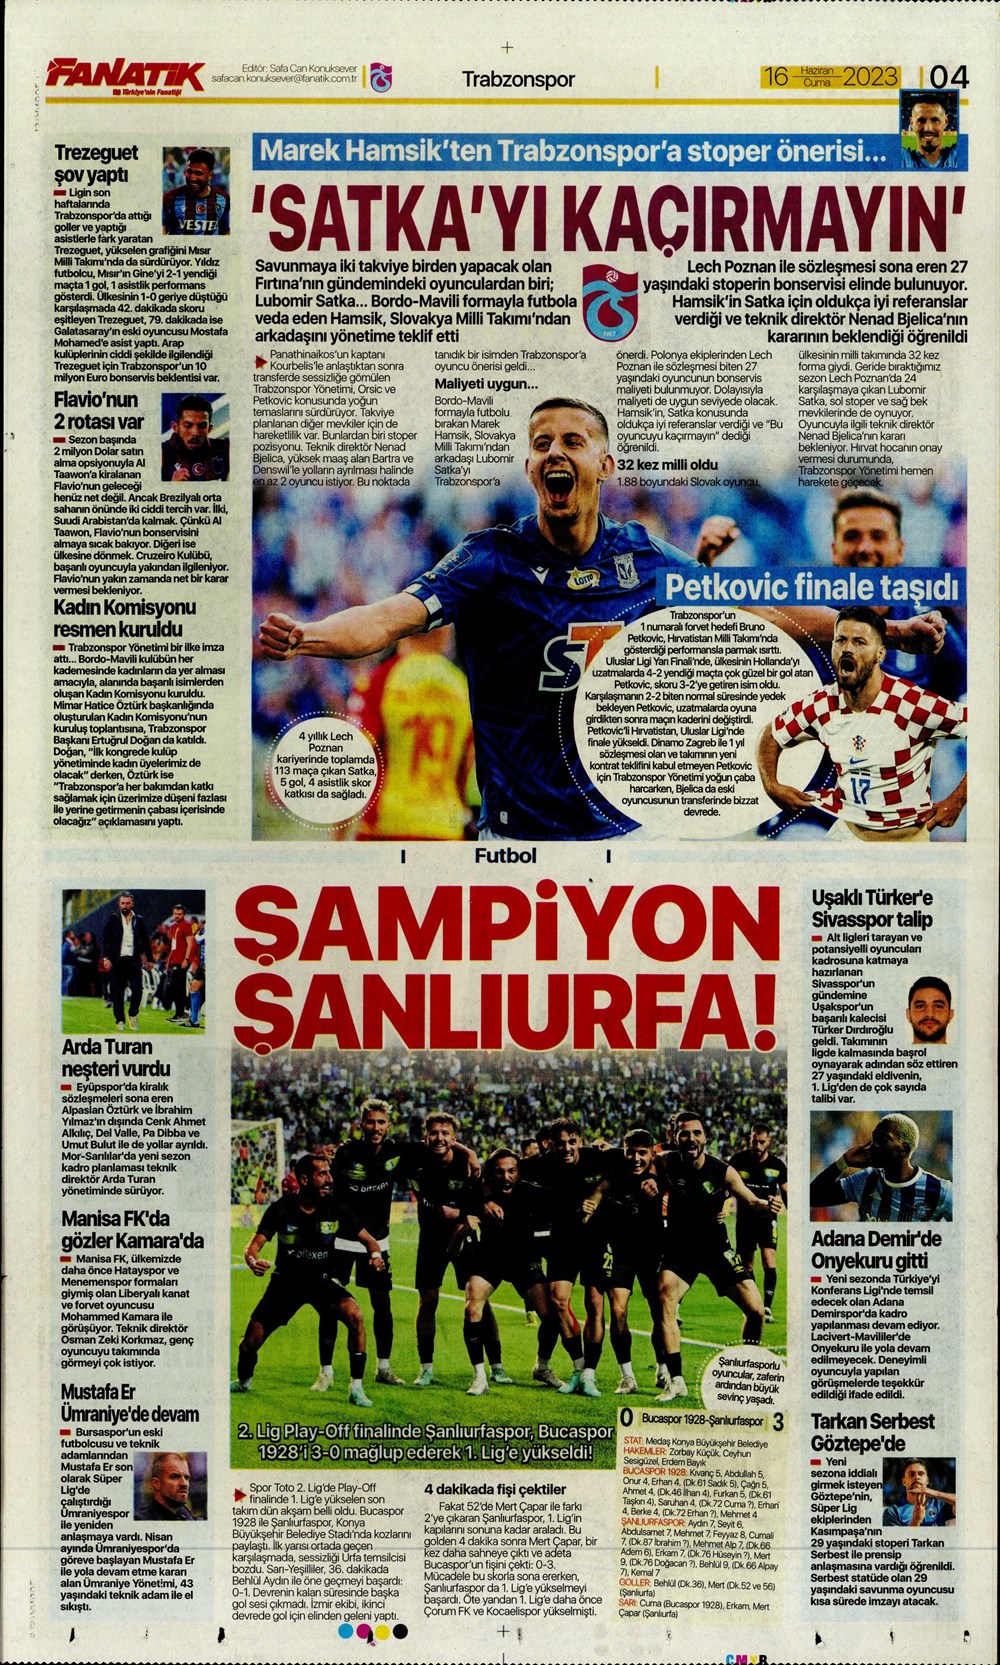 "Dzeko çok yakın" Sporun manşetleri (16 Haziran 2023)  - 5. Foto